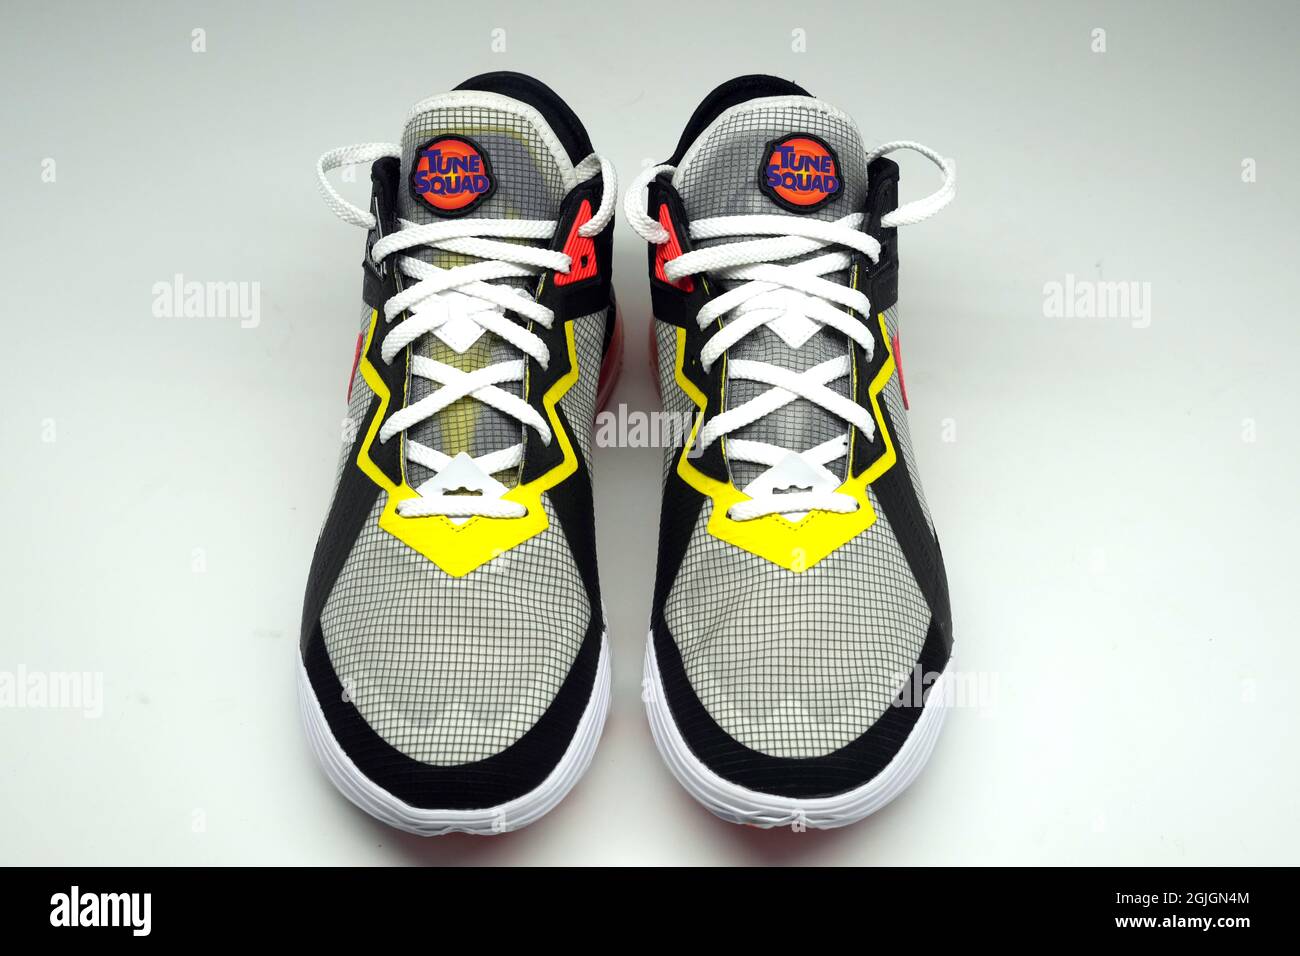 Vue détaillée des chaussures Nike LeBron 18 Low Edition Limited Space Jam 2 Edition. Banque D'Images